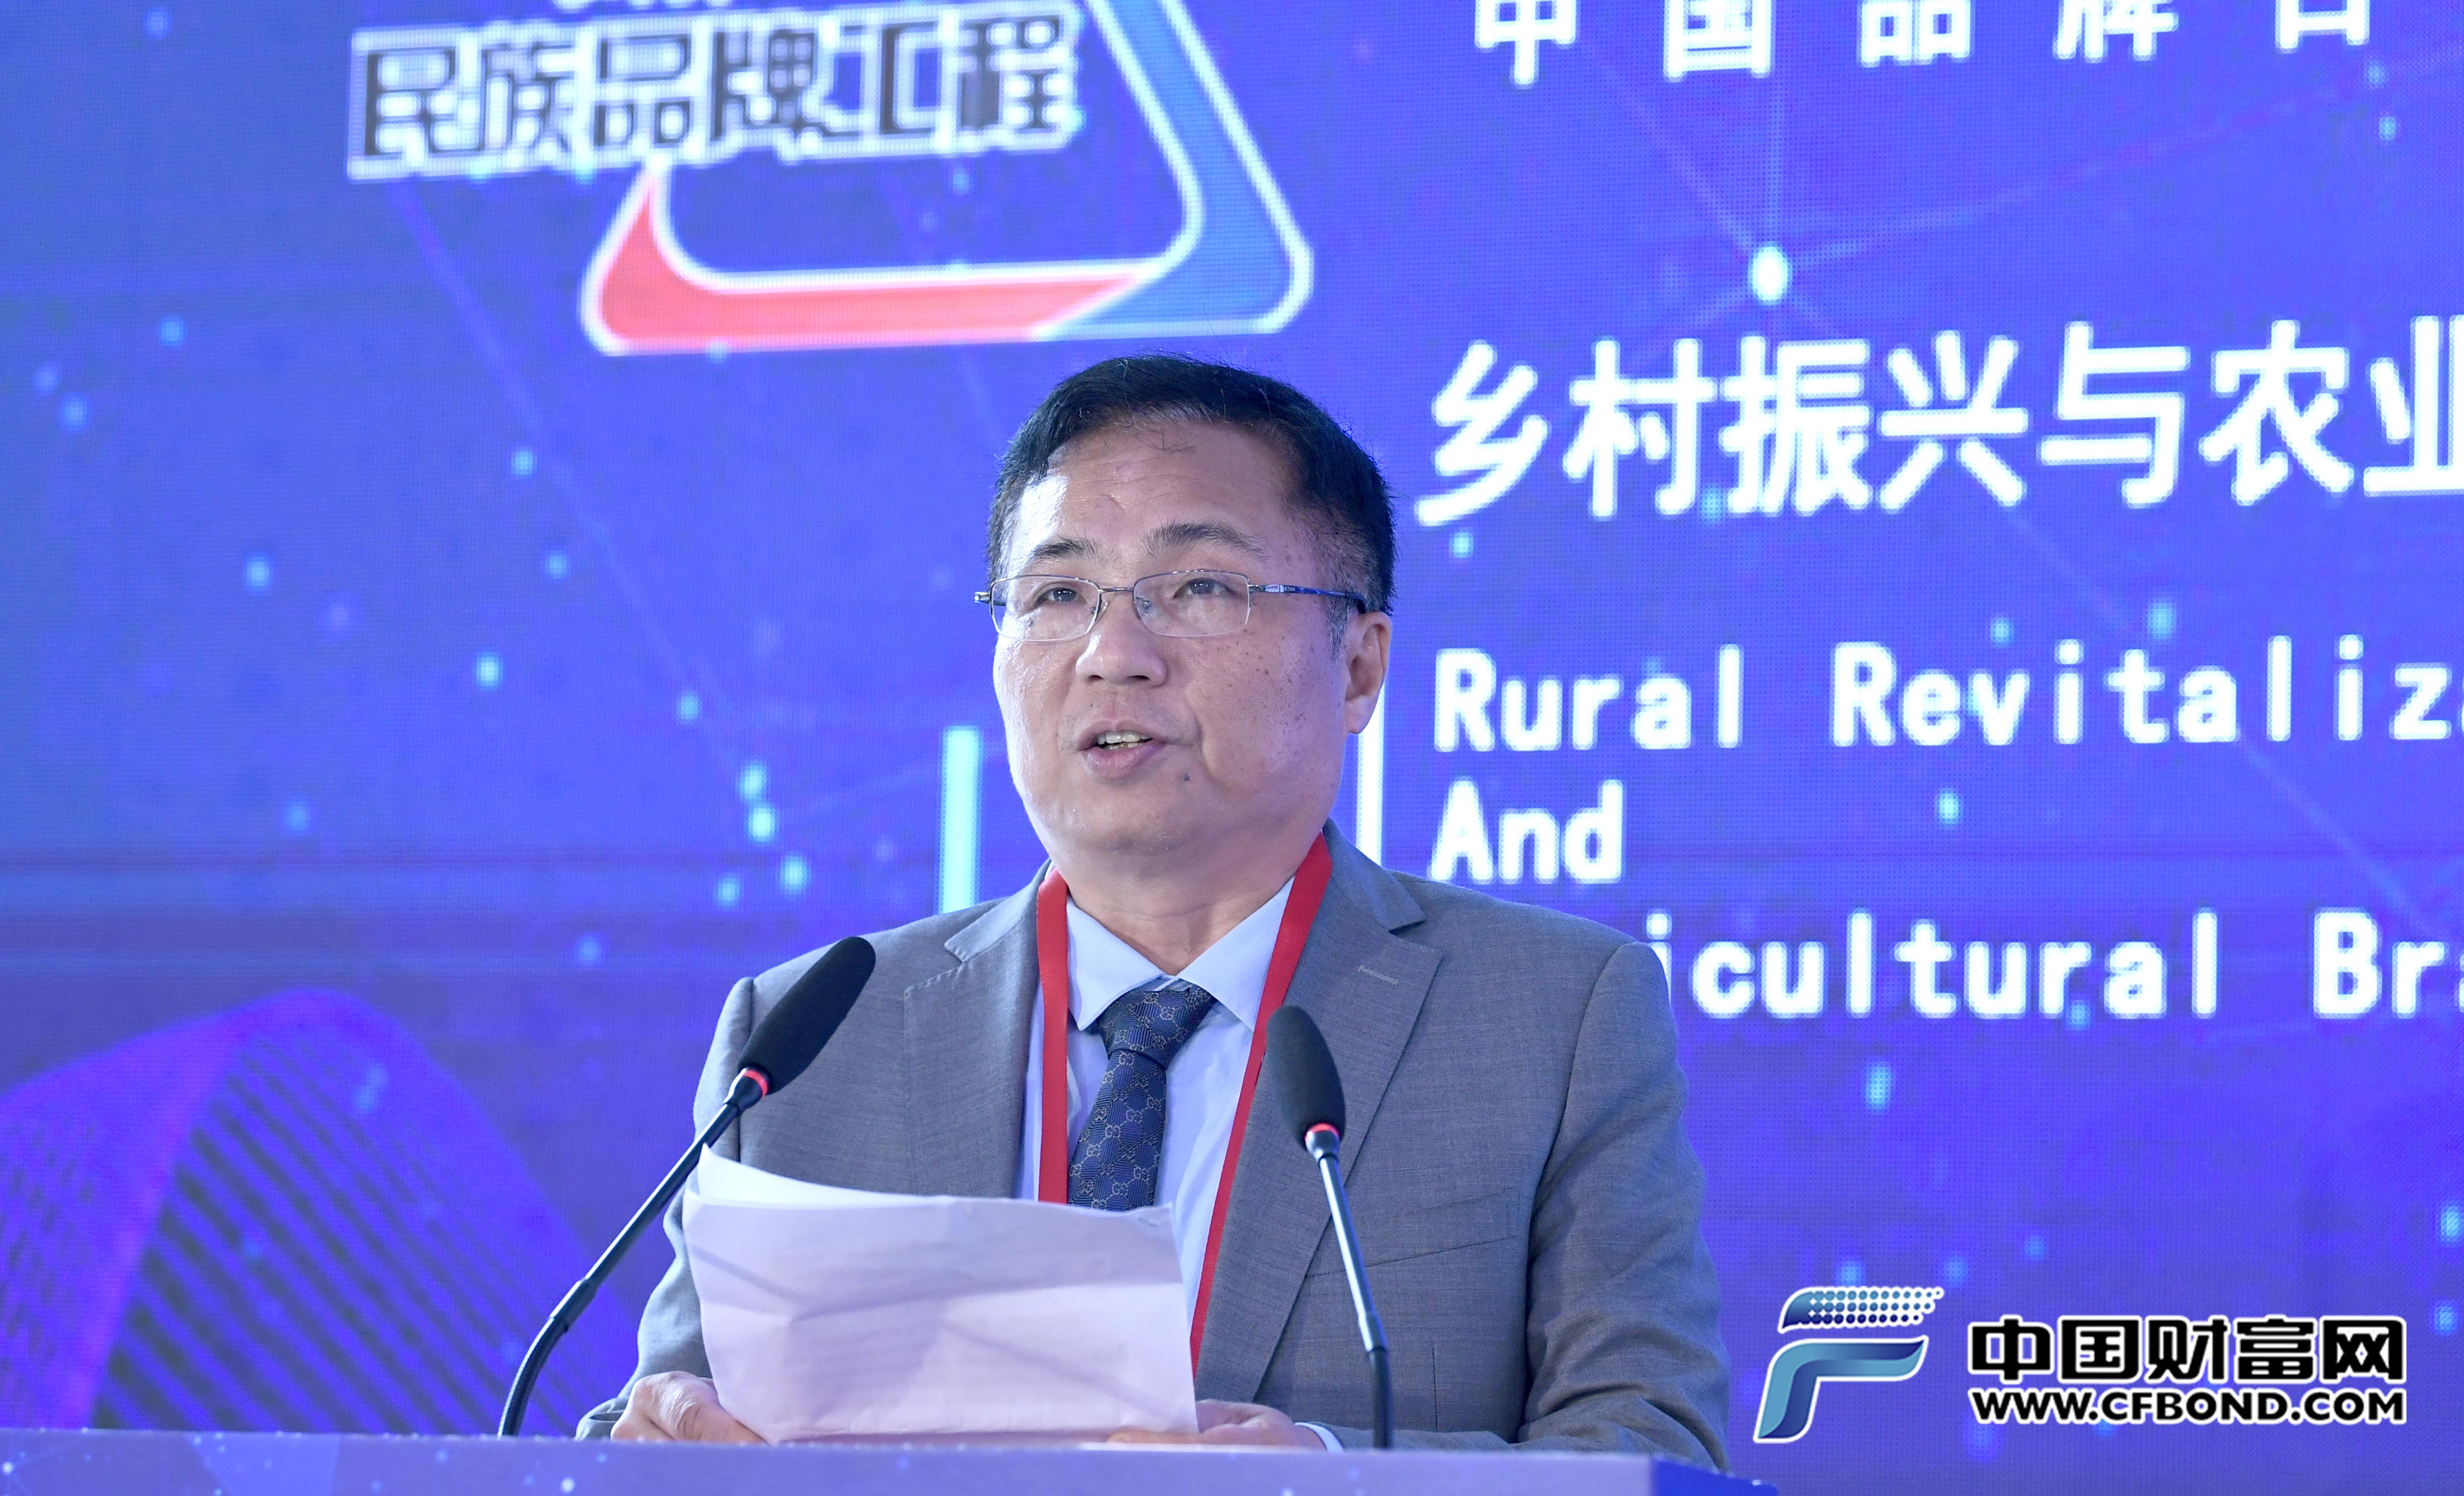 八马茶业股份有限公司总工程师林荣溪发表主题演讲